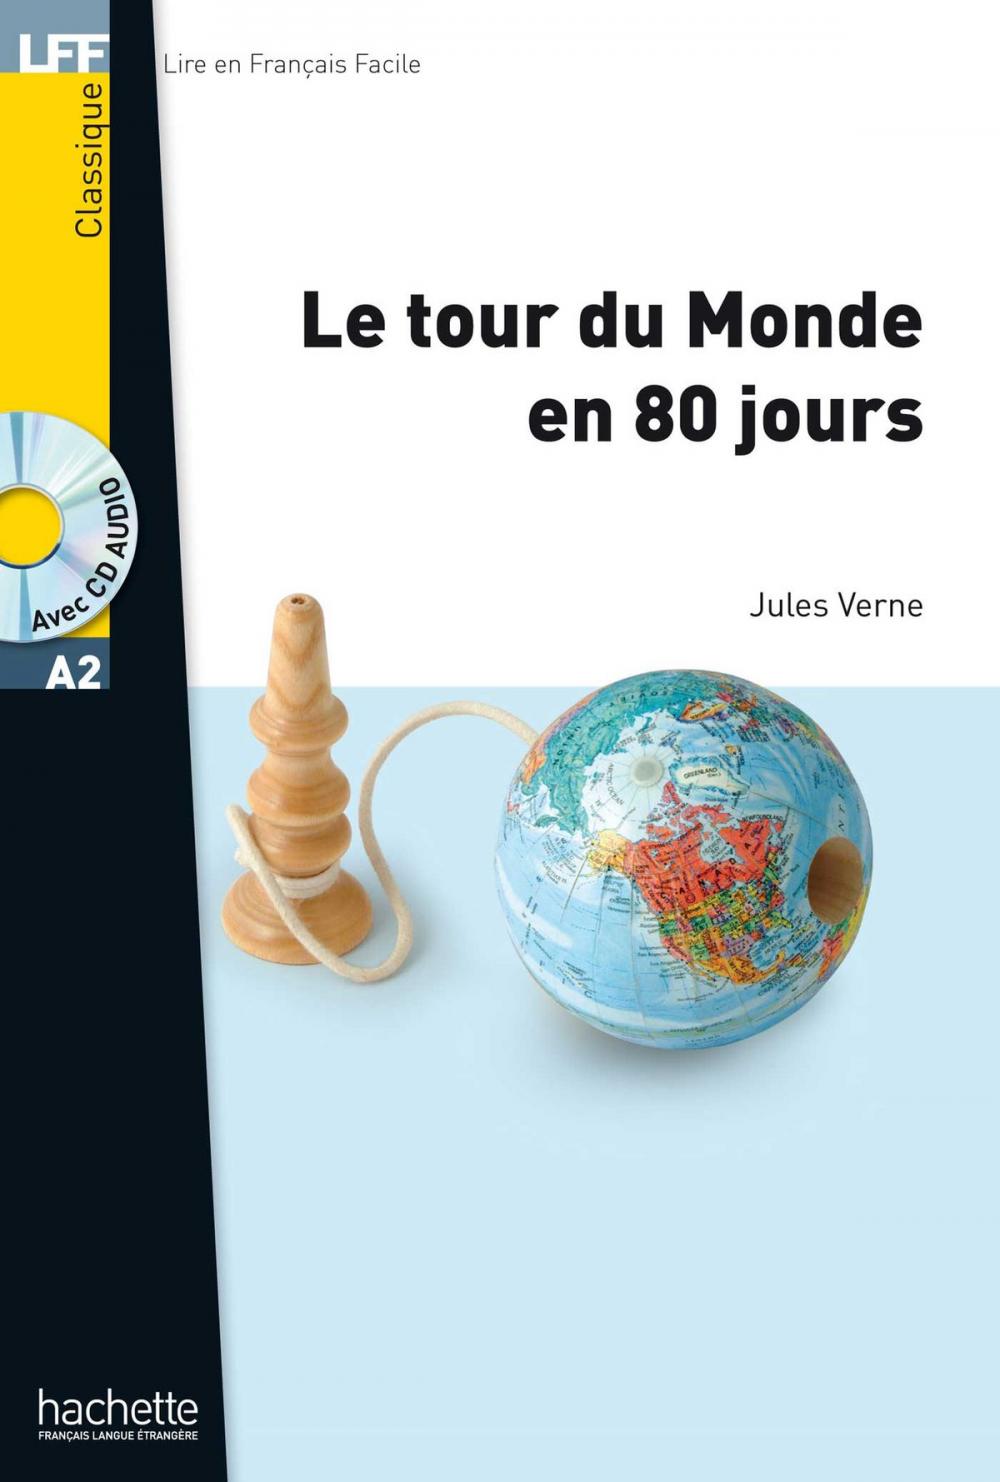 Big bigCover of LFF A2 - Le Tour du Monde en 80 jours (ebook)